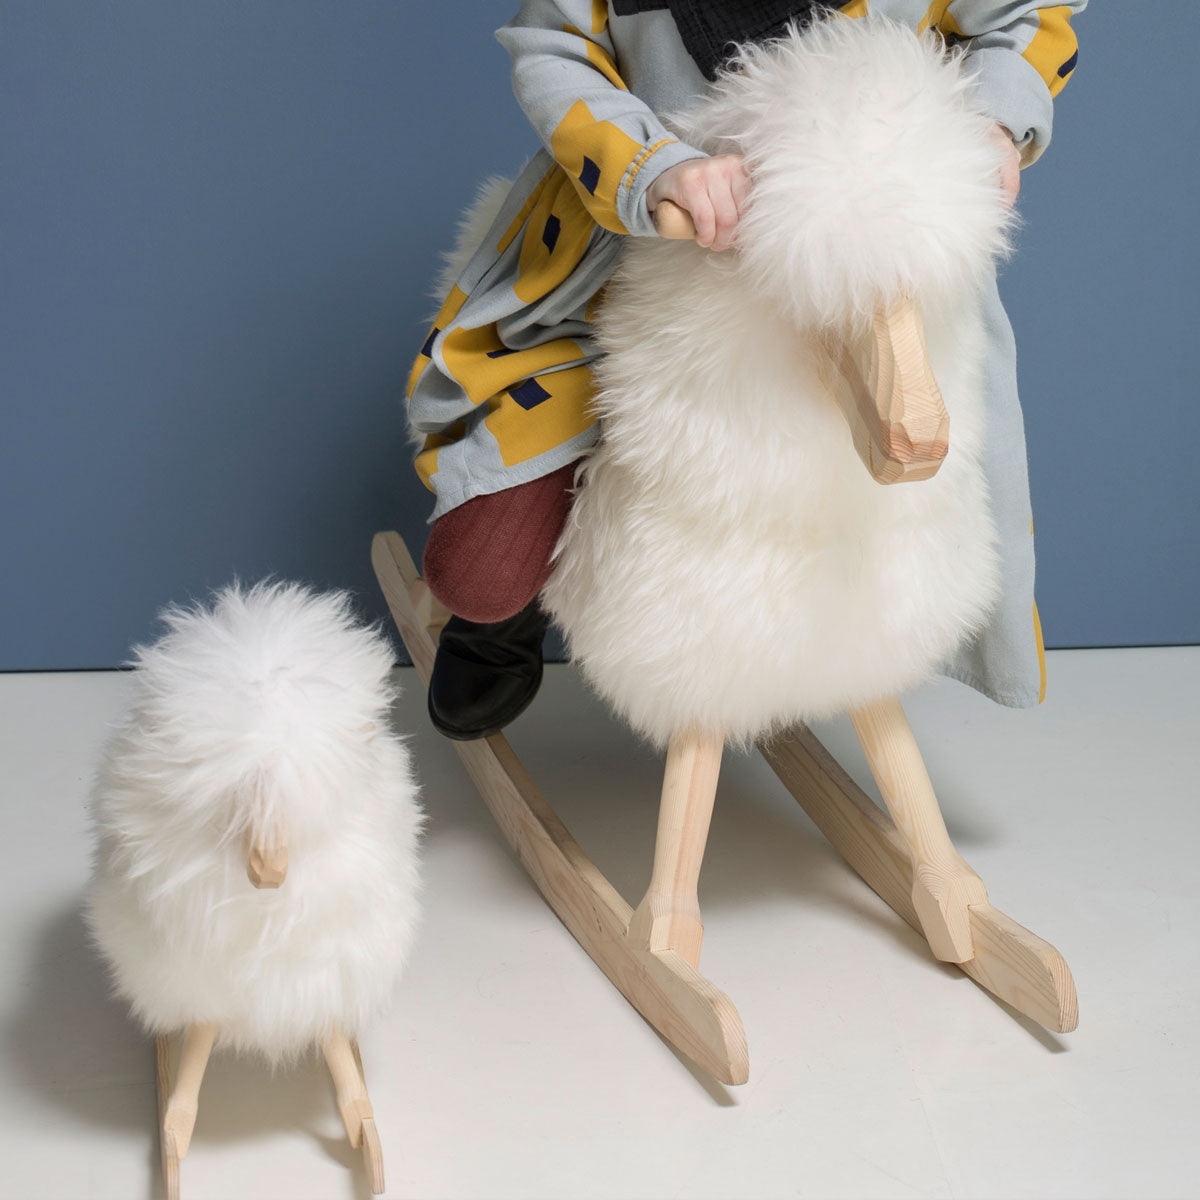 The Rocking Lamb │ Povl Kjer Design │ Made in Denmark │ Natural White Long Wool │ Small